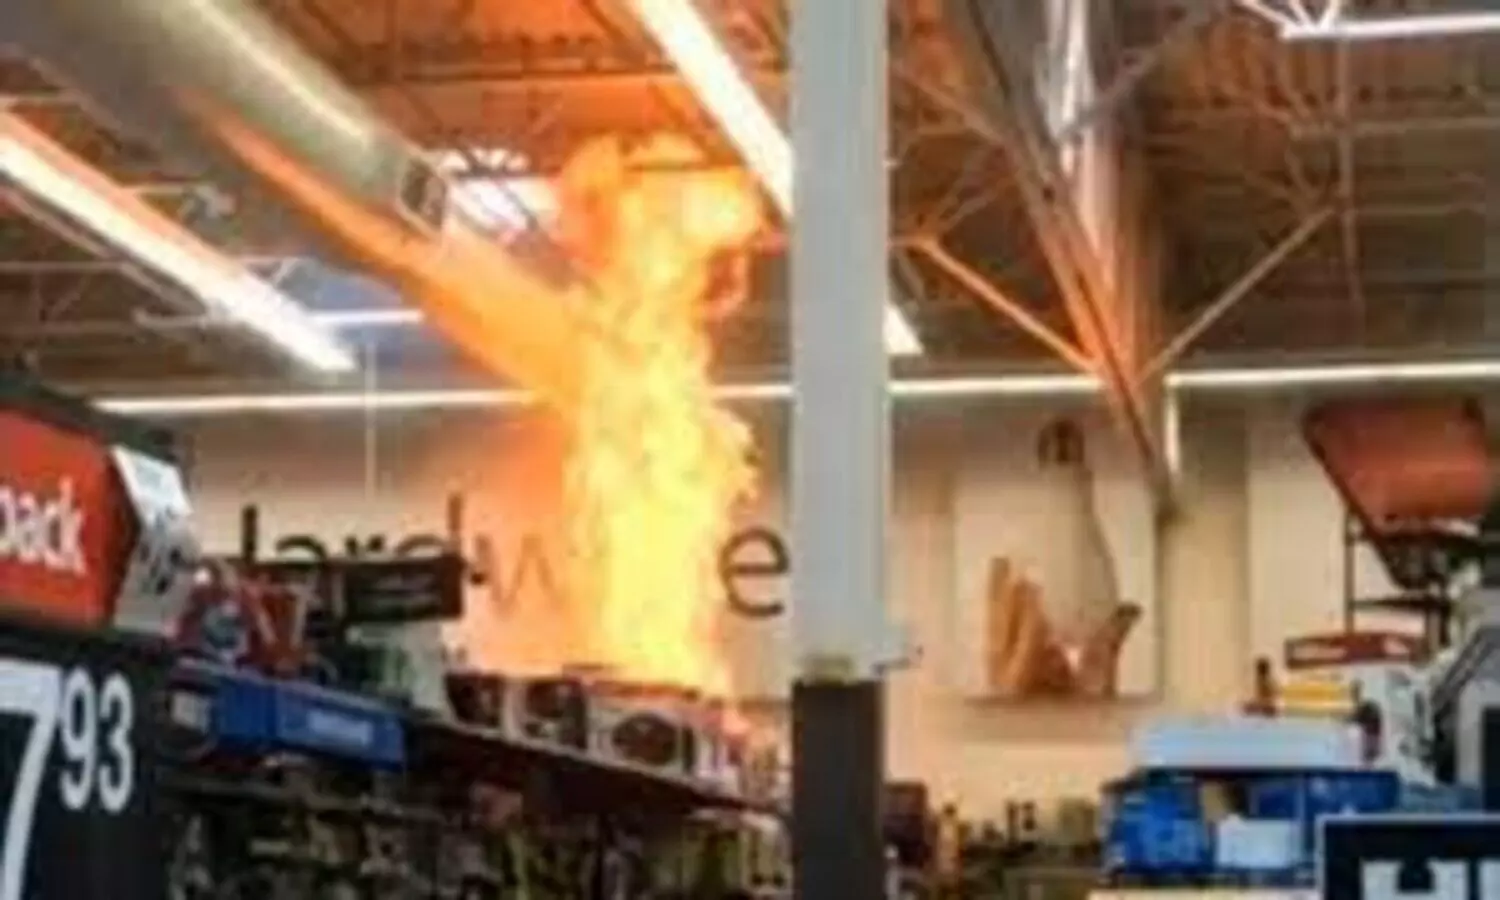 firing in Walmart store